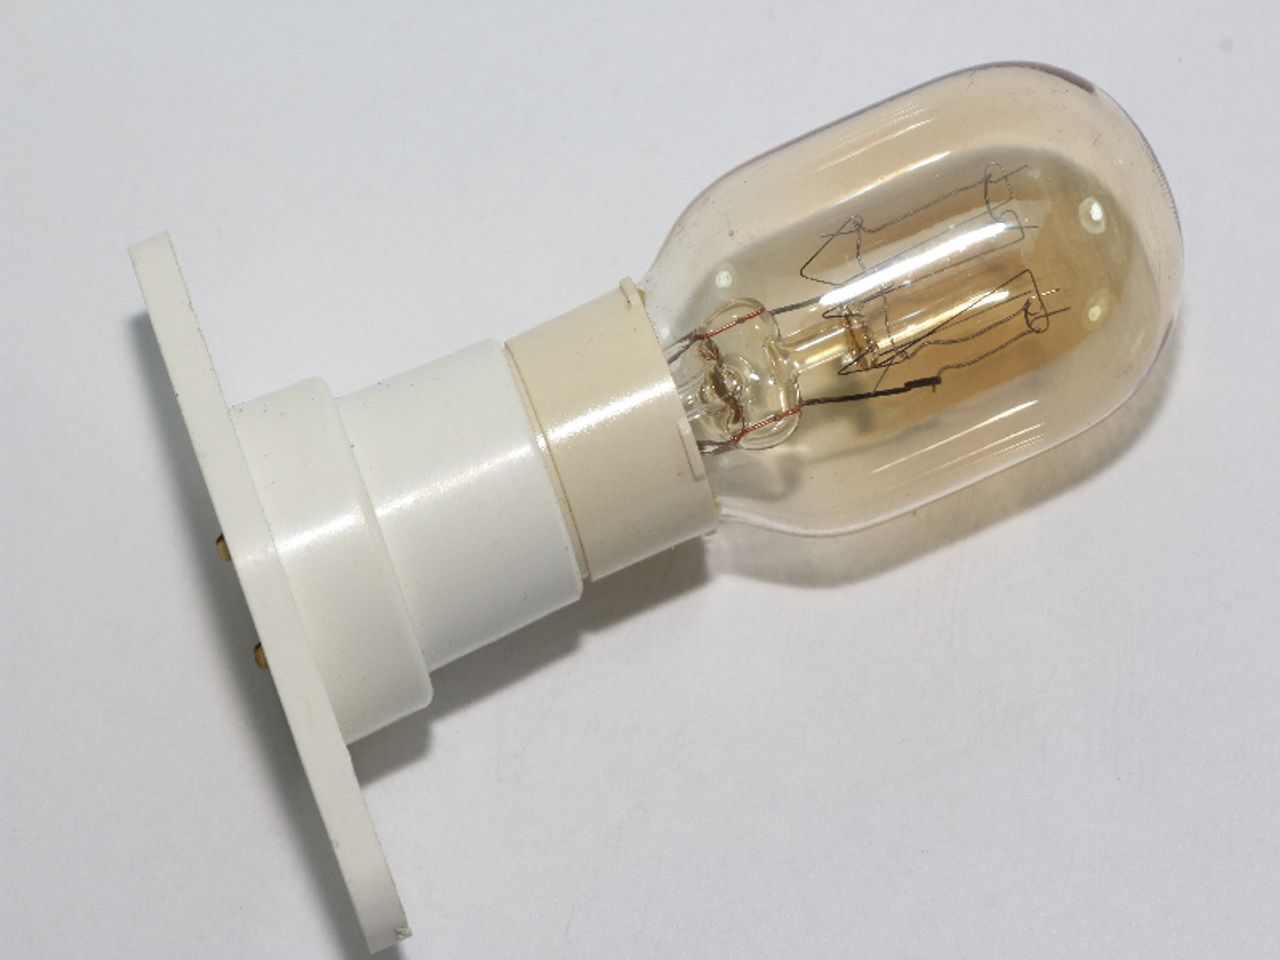 Лампа для свч. Лампа СВЧ 25w (484000000987). Лампочка для СВЧ Sharp MTR 240v 25w. Лампа 6,5 w 170-240 v 50 Hz 01.2017. Лампа СВЧ Daewoo.